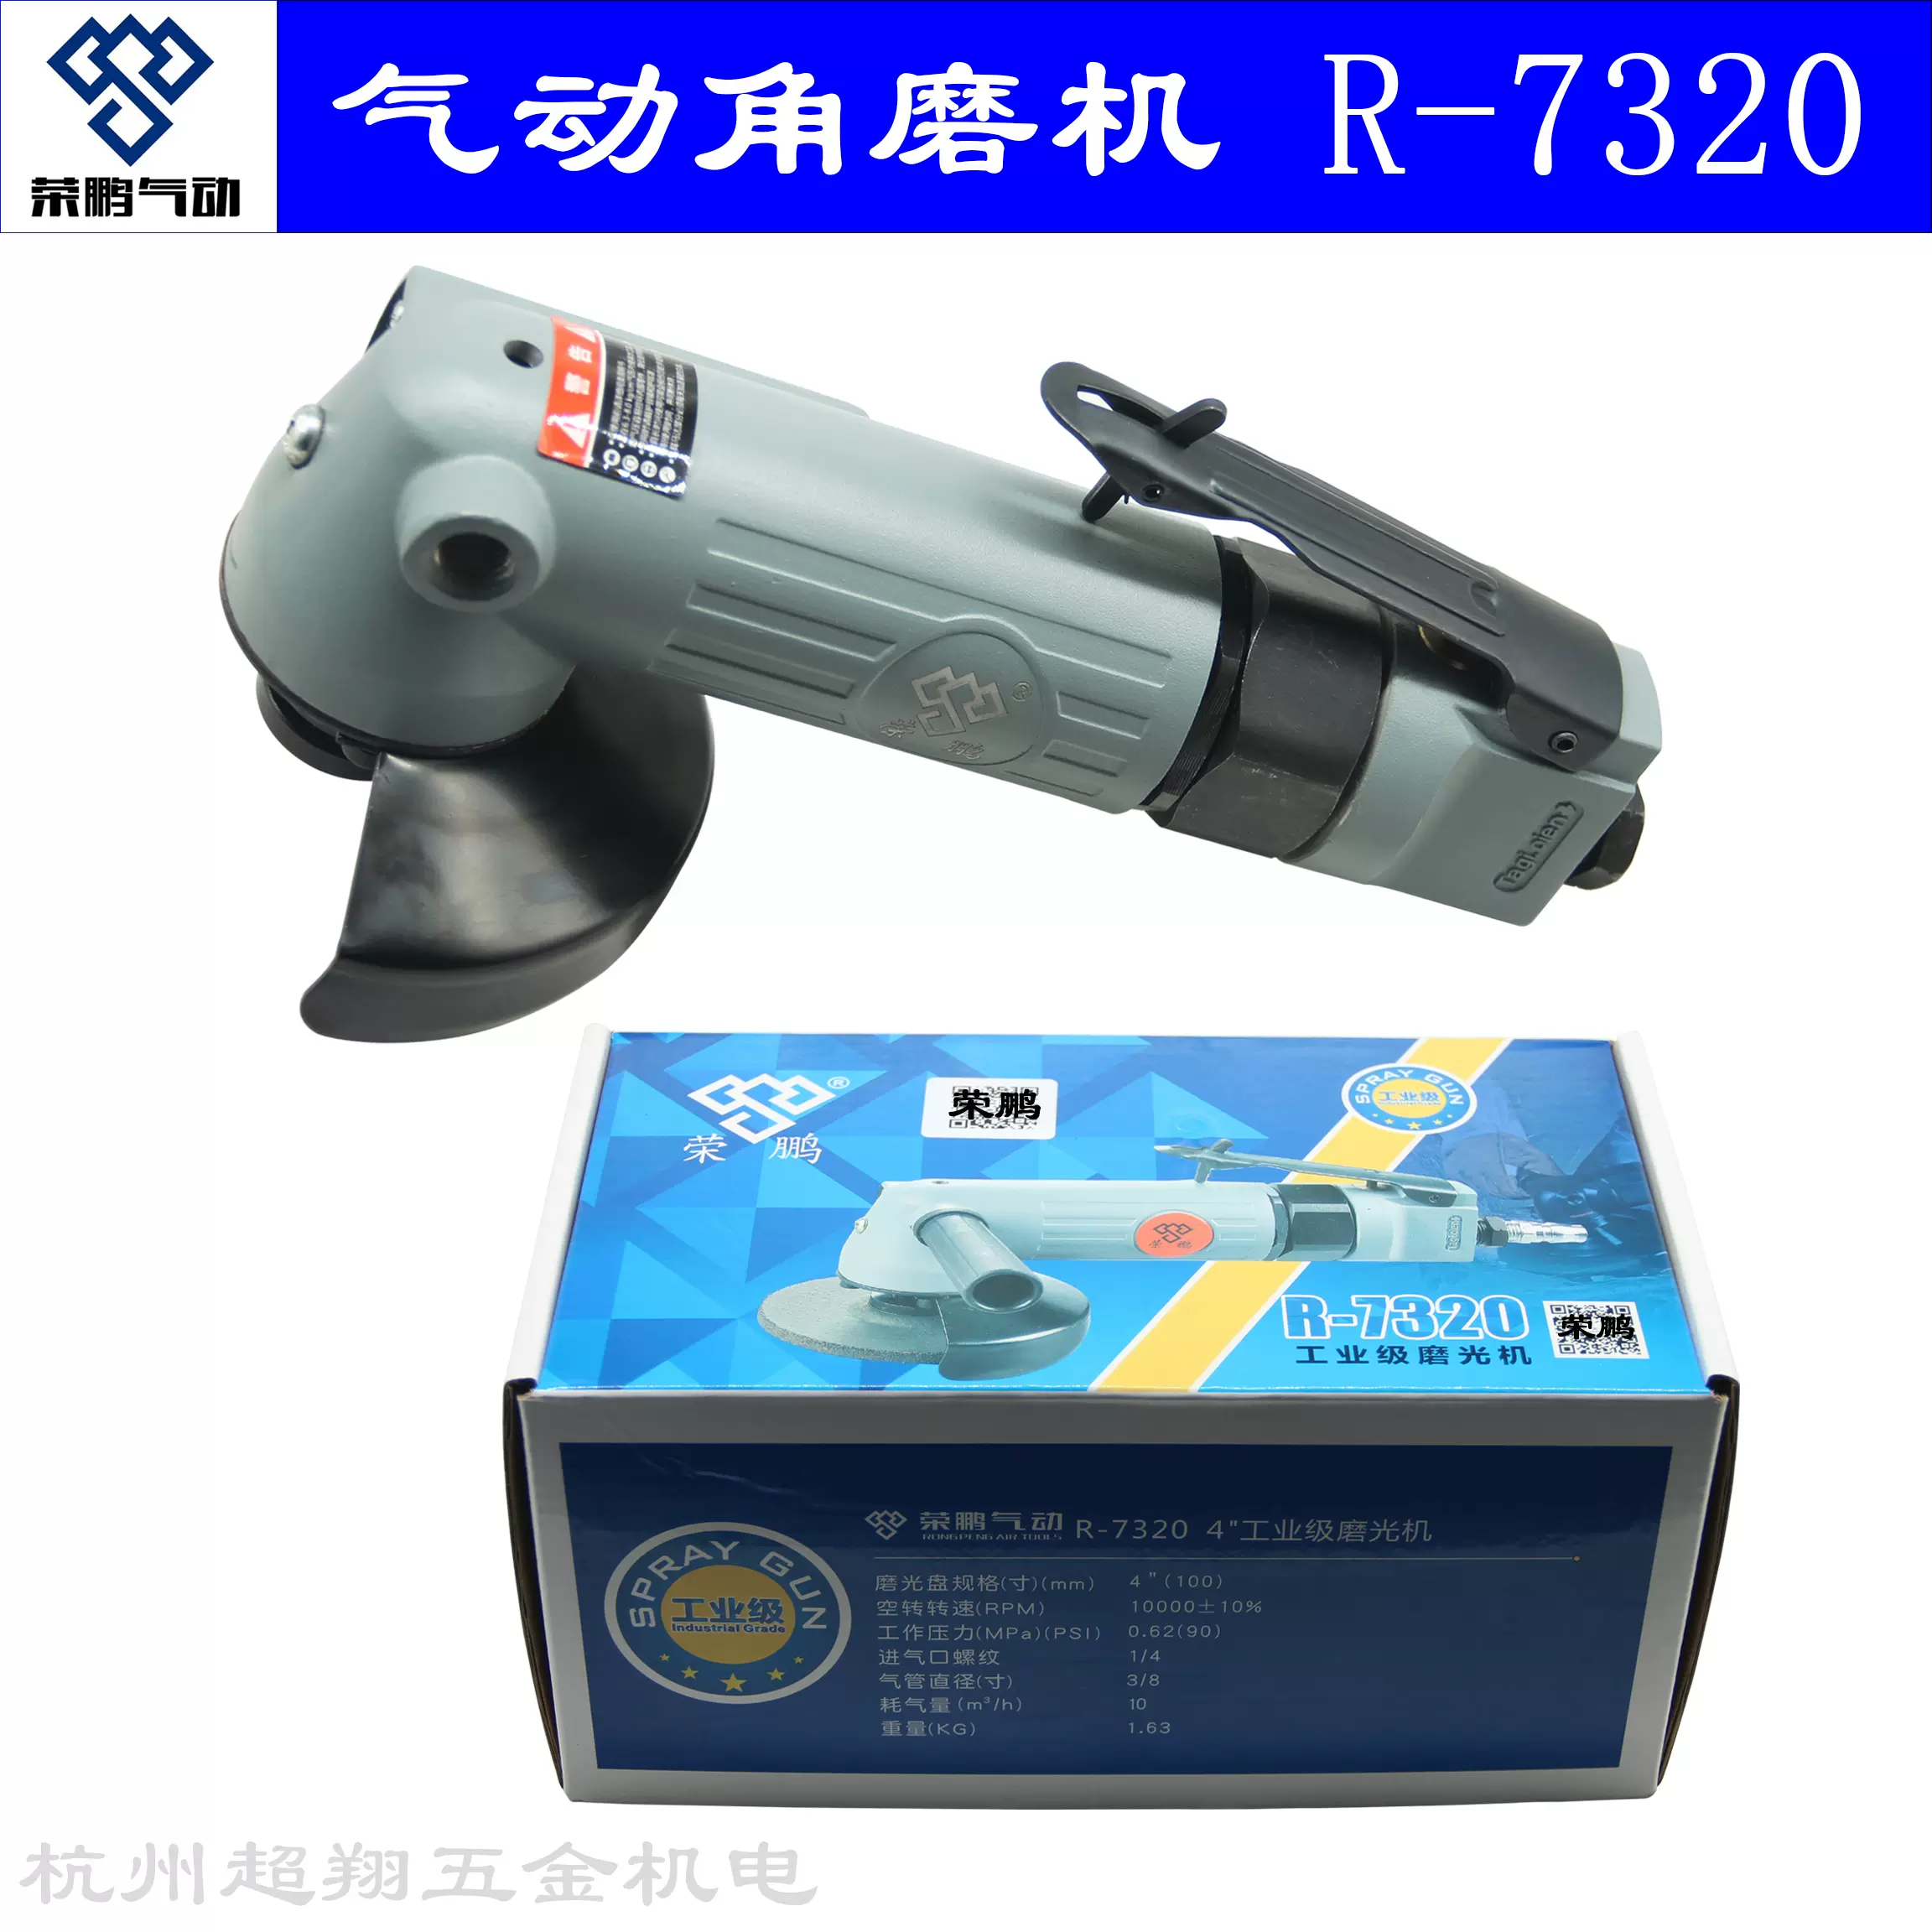 荣鹏气动磨光机R-7320 4寸工业级角磨机100mm风动打磨机抛光机-Taobao 